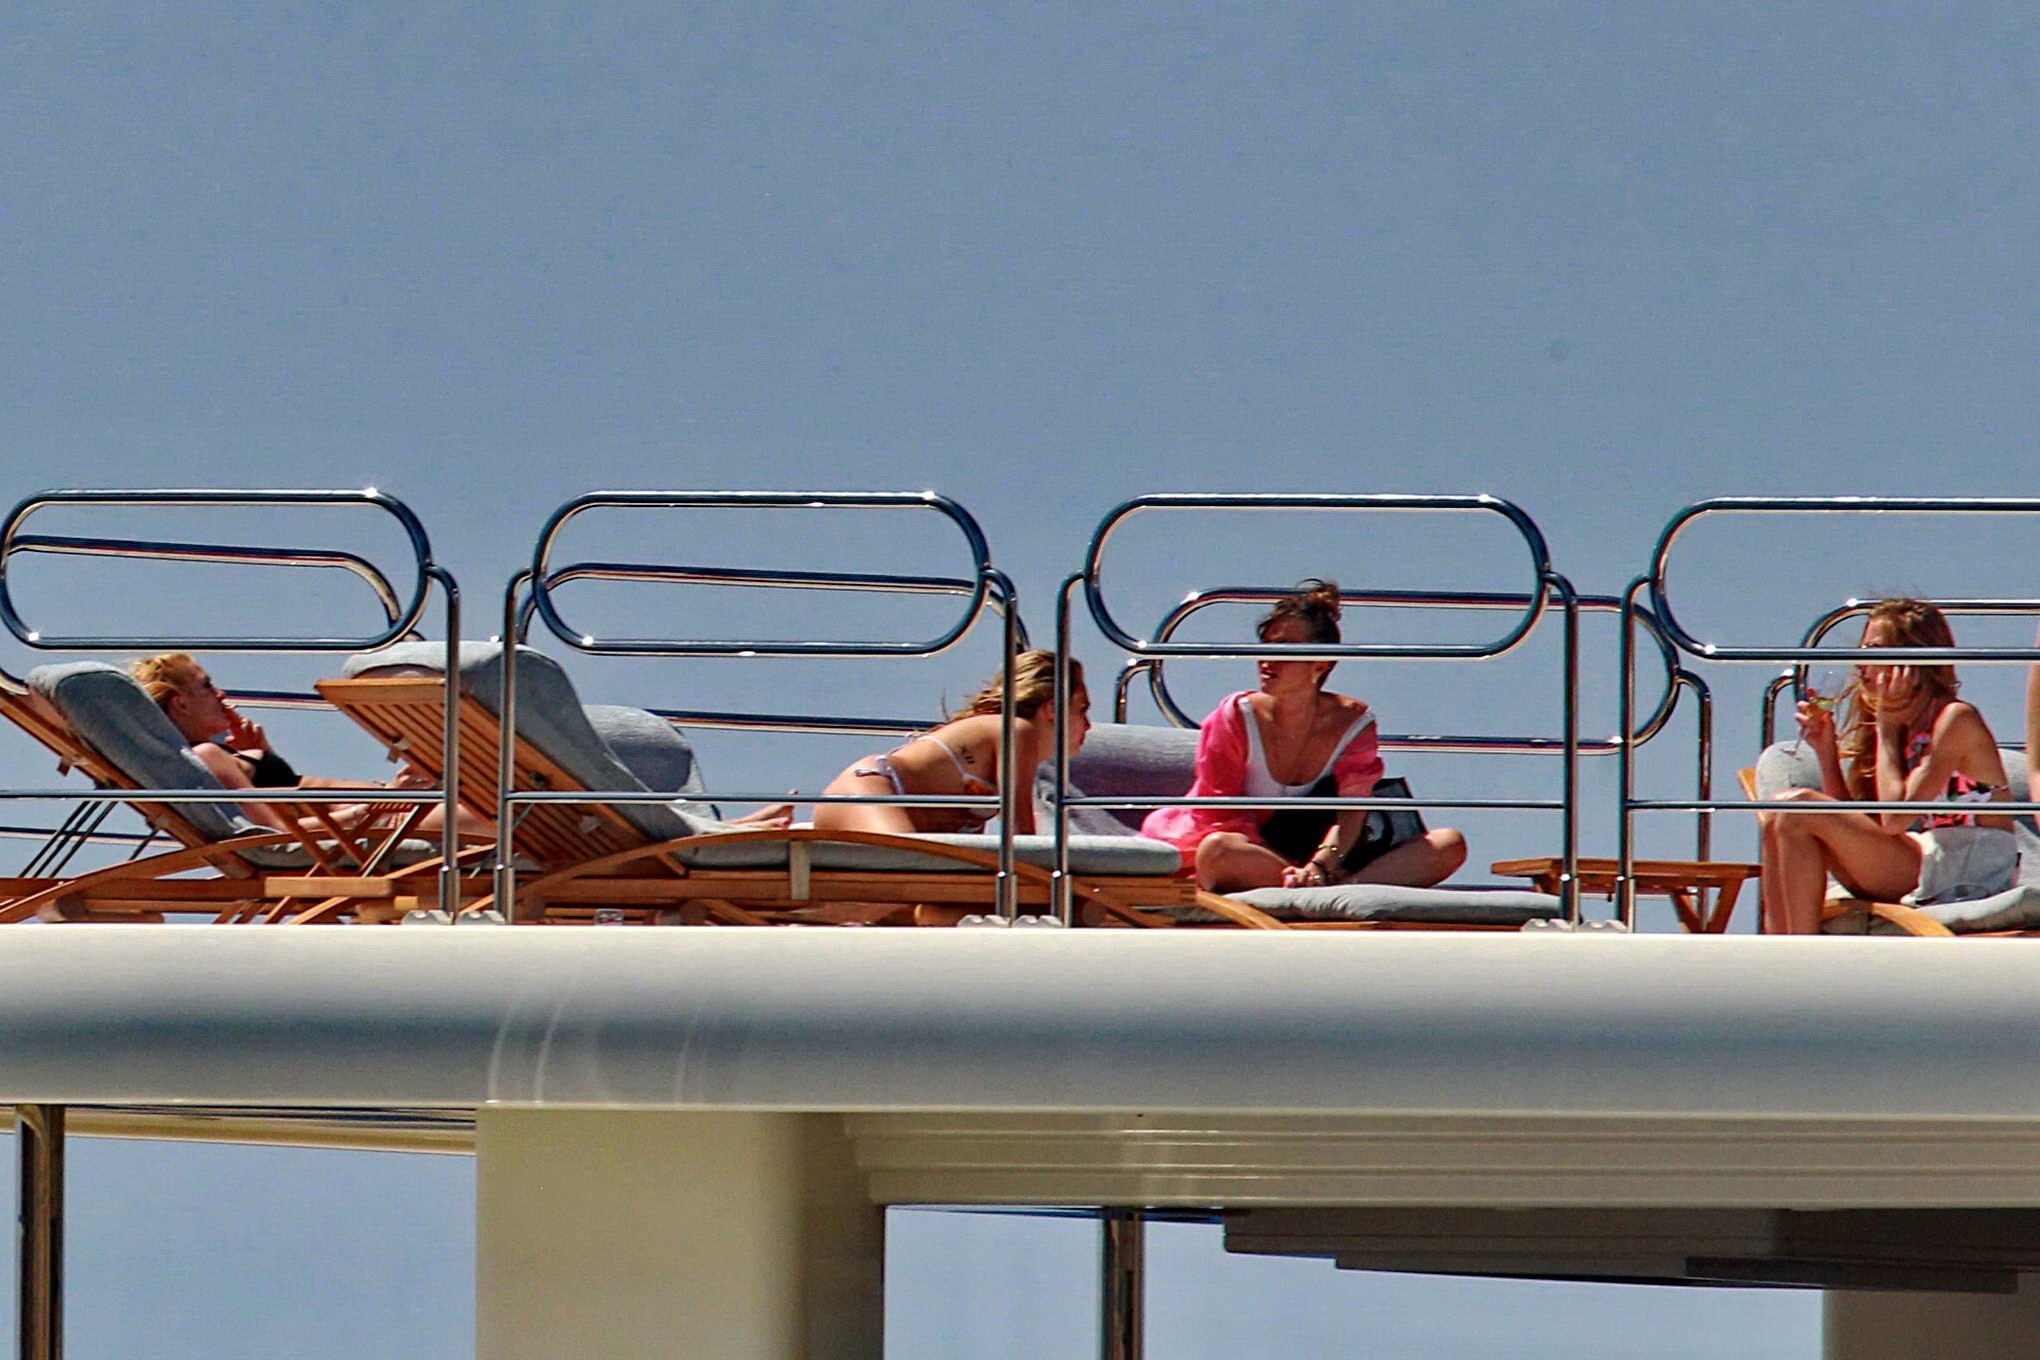 Cara Delevingne wearing a bikini on a yacht in Ibiza #75188571